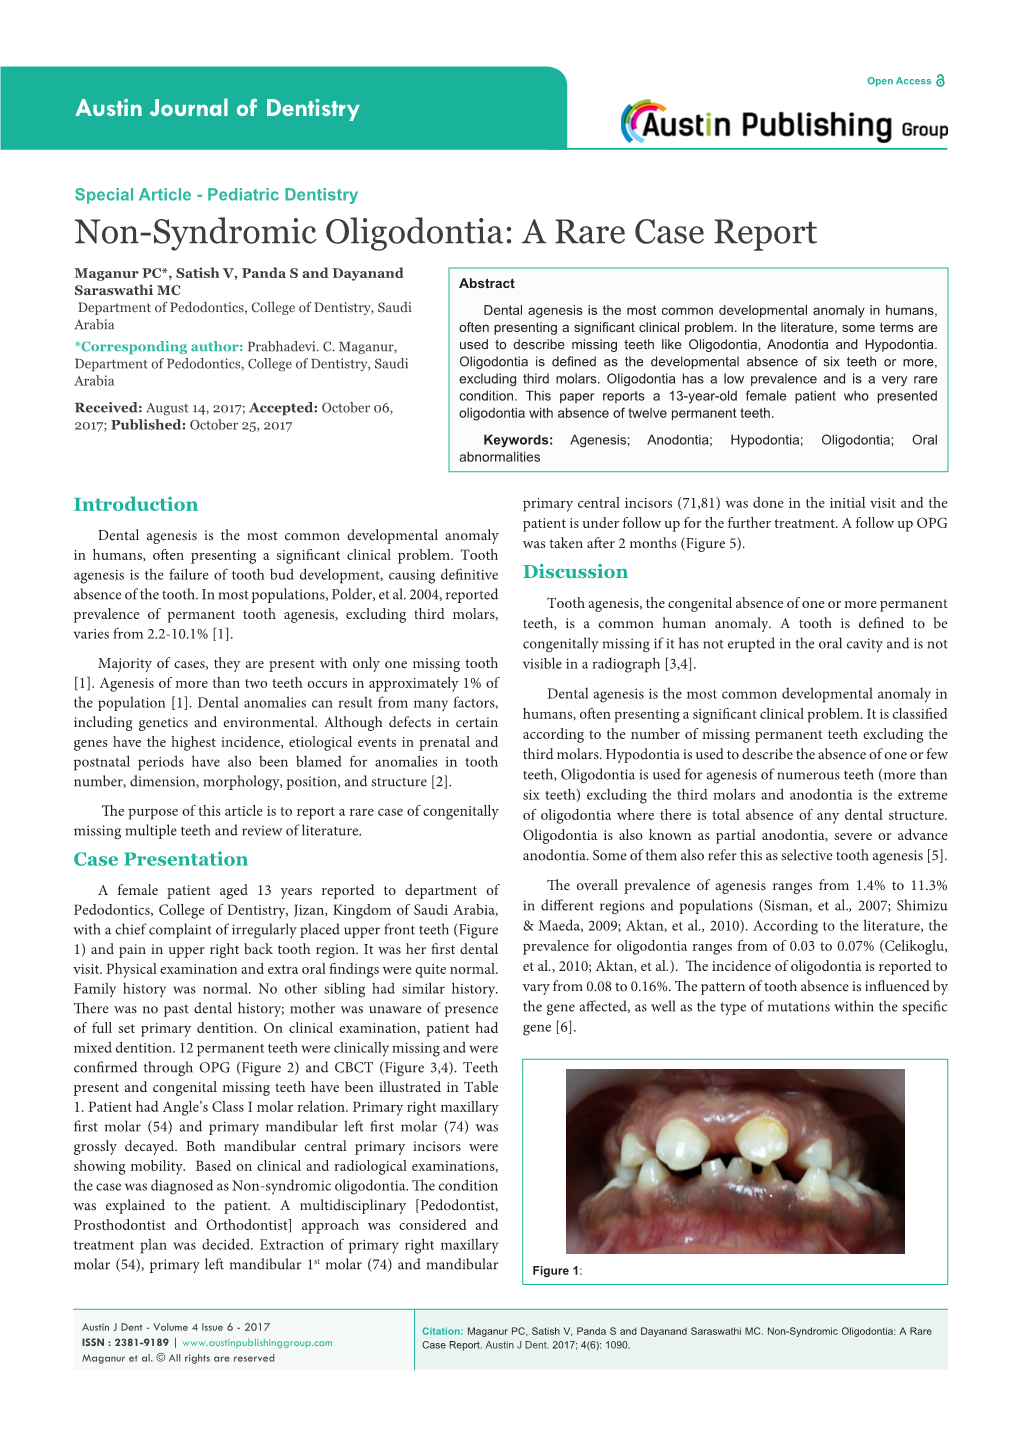 Non-Syndromic Oligodontia: a Rare Case Report